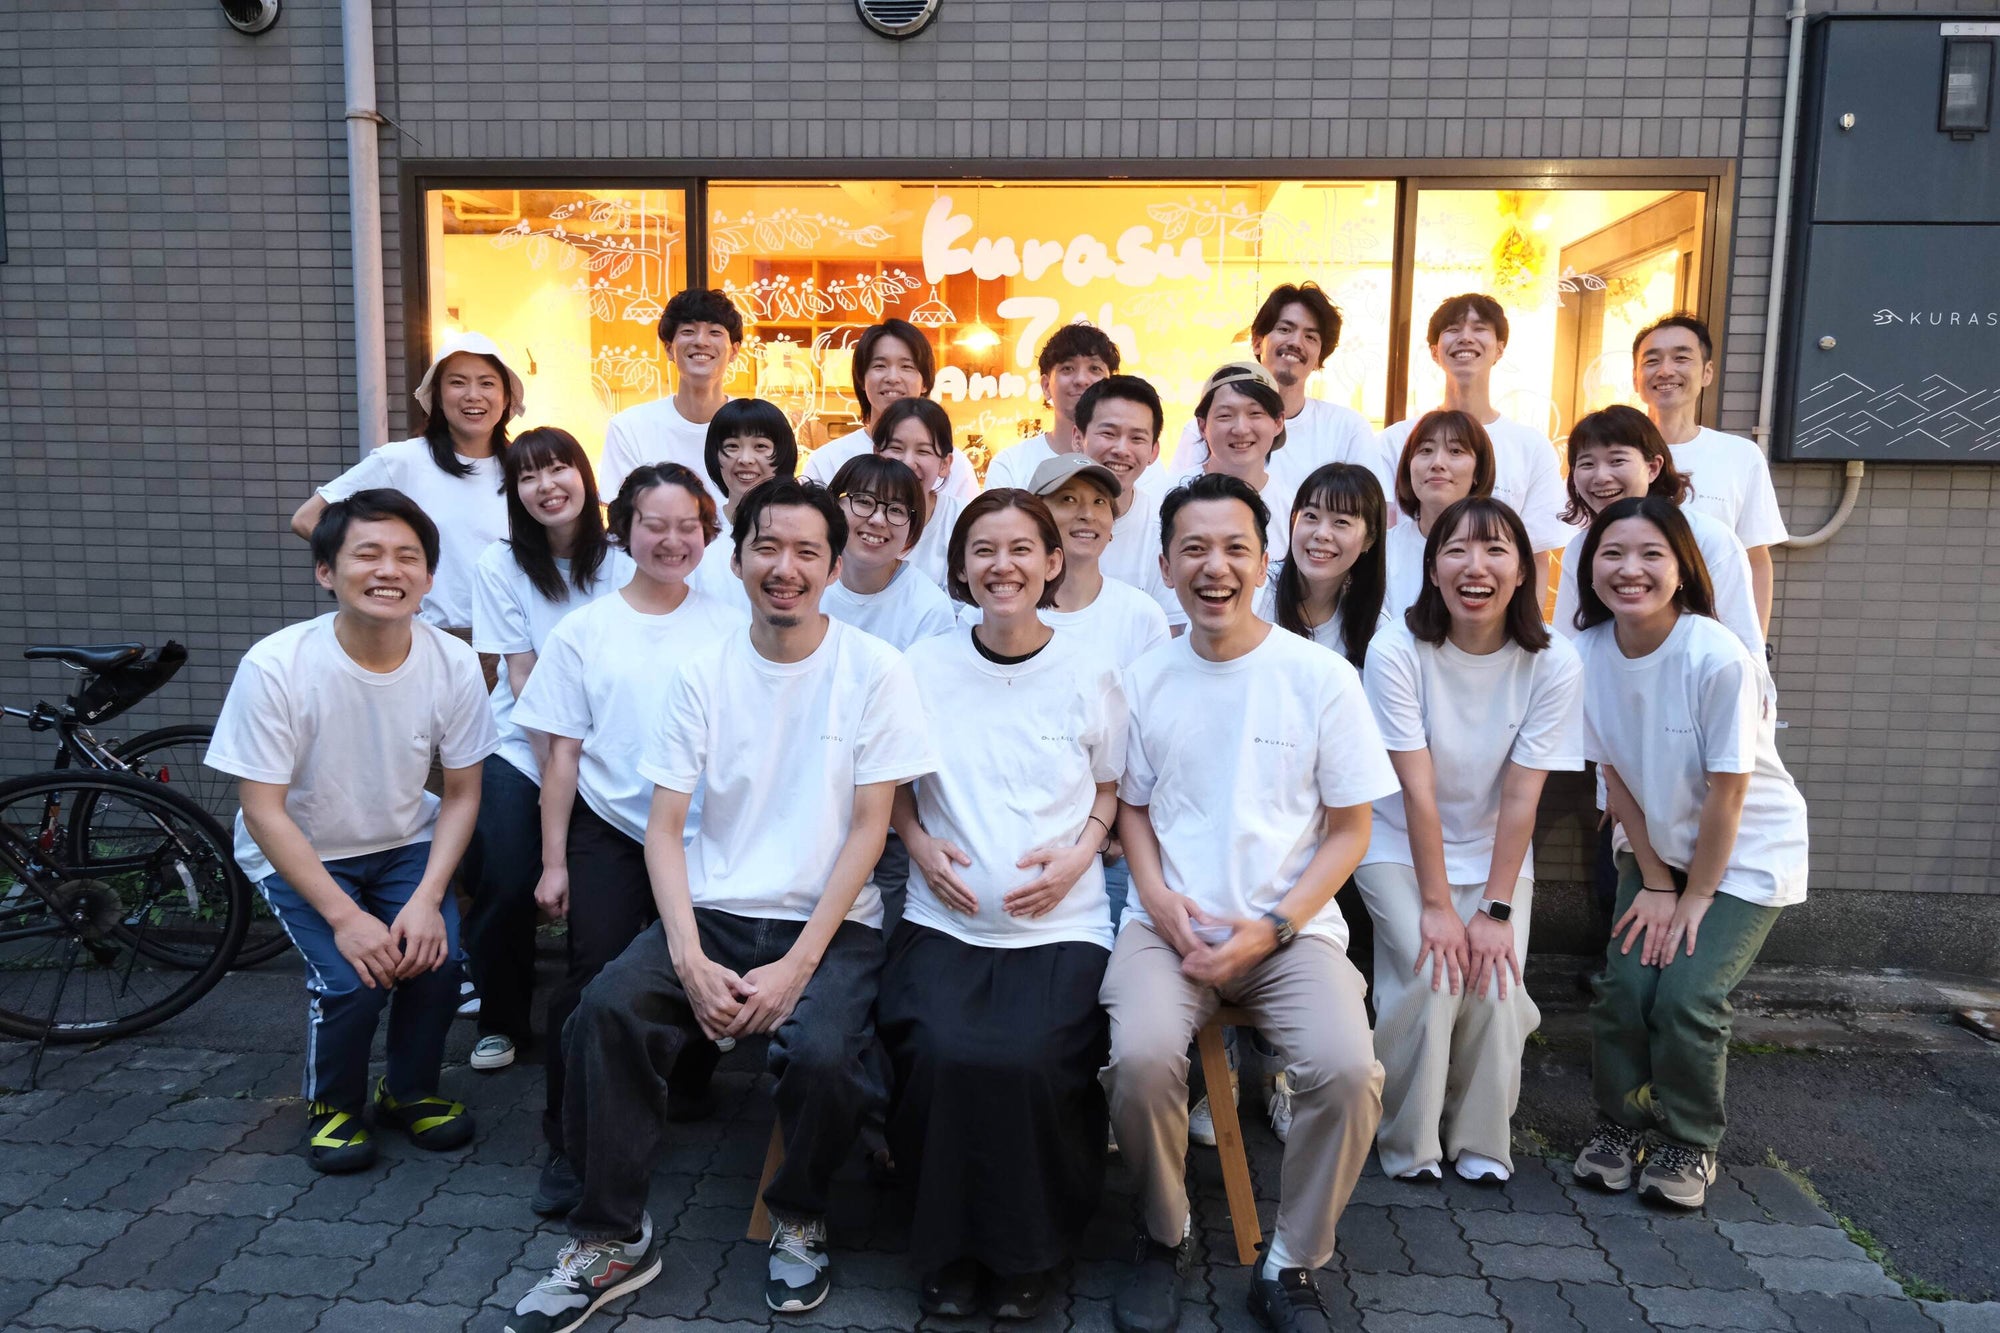 Kurasu Kyoto Stand Celebrates 7th Anniversary this August